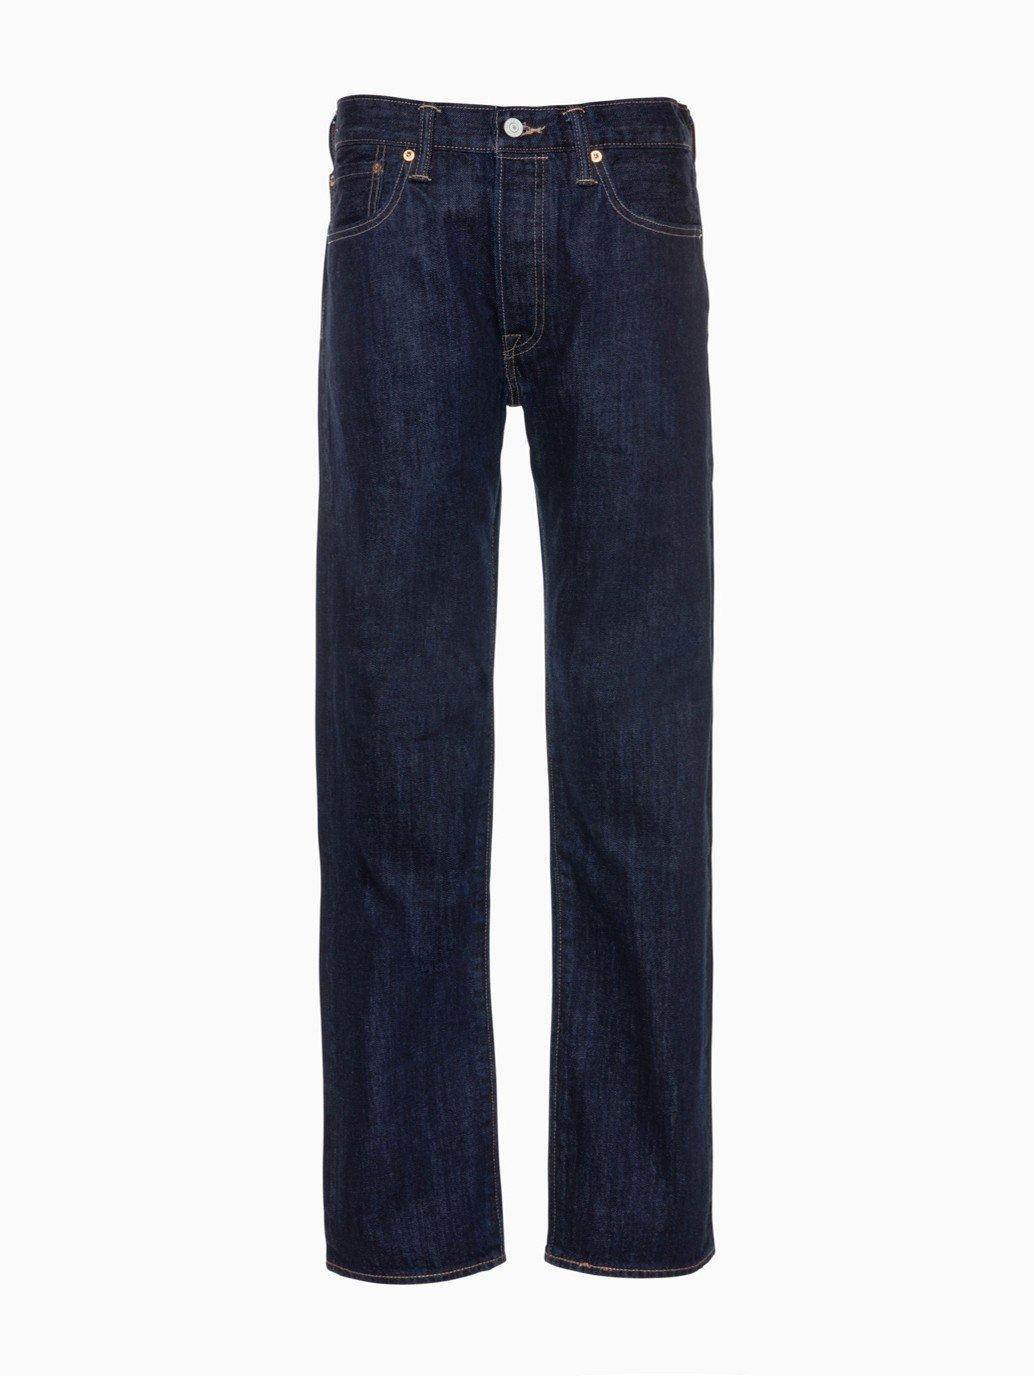 levis singapore Levis 501 Original Fit Jeans 005011484 13 Details